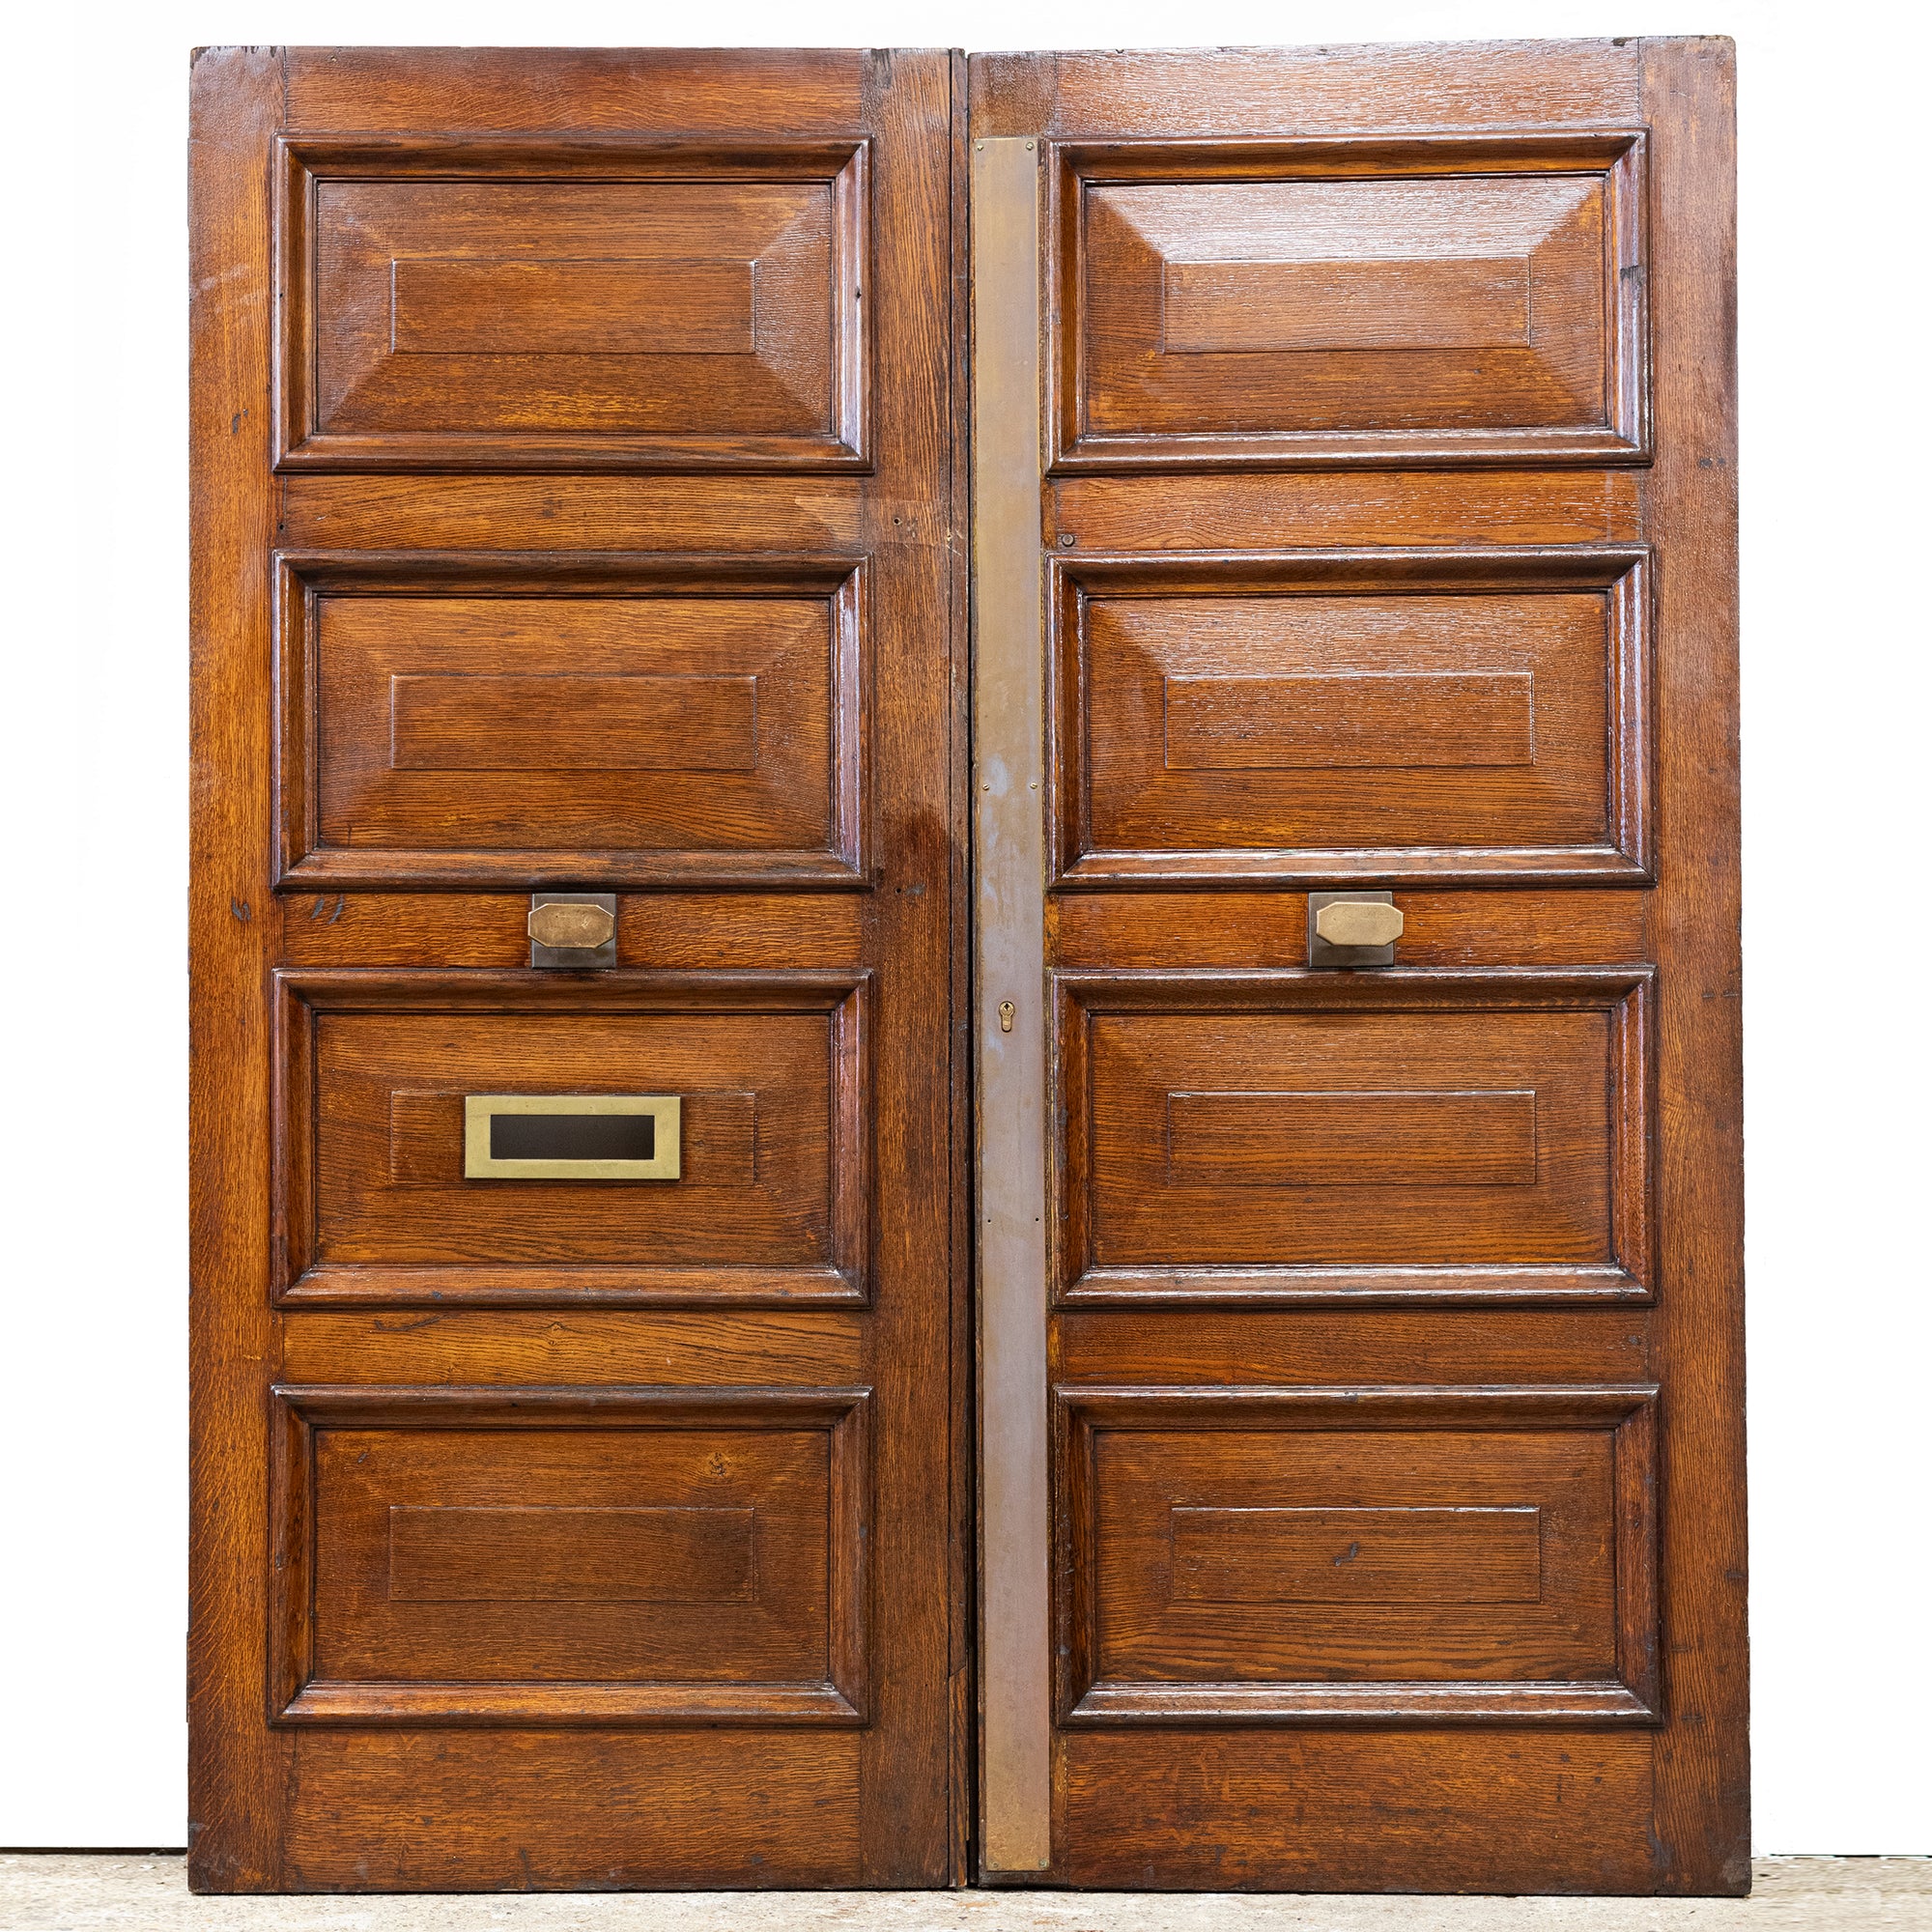 Antique Oak Double Doors with Panels - 214cm x 183cm | The Architectural Forum